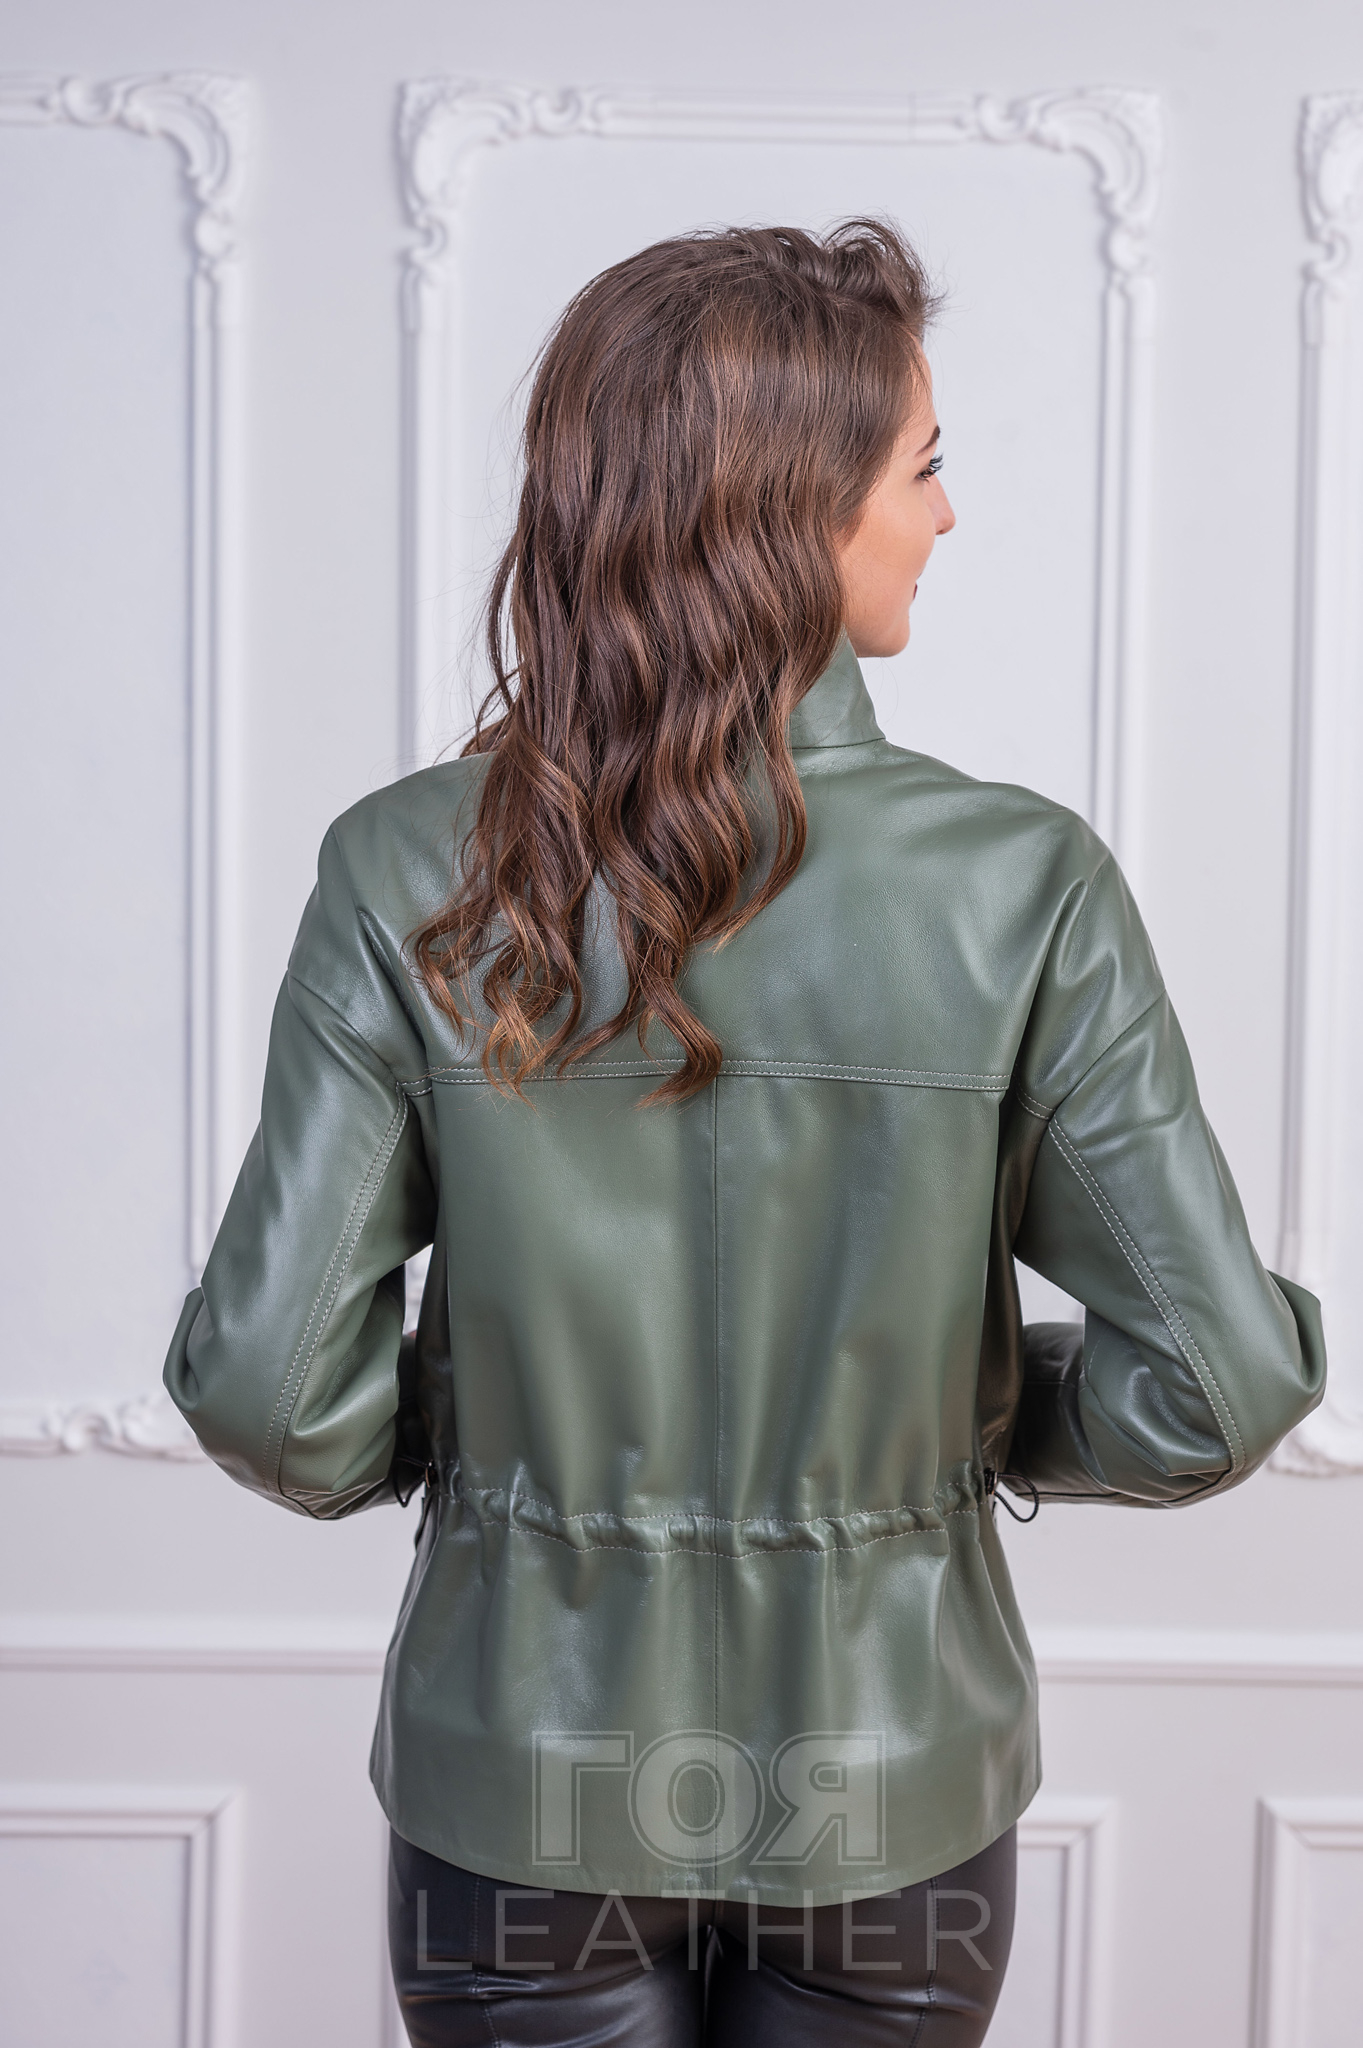 Дамско кожено яке Анита от Гоя Leather. Нов модел колекция 2022 г. Изработен от 100% естествена кожа- агнешка напа. Удобна кройка в стил овърсайз, подходящо за сезон пролет-есен.